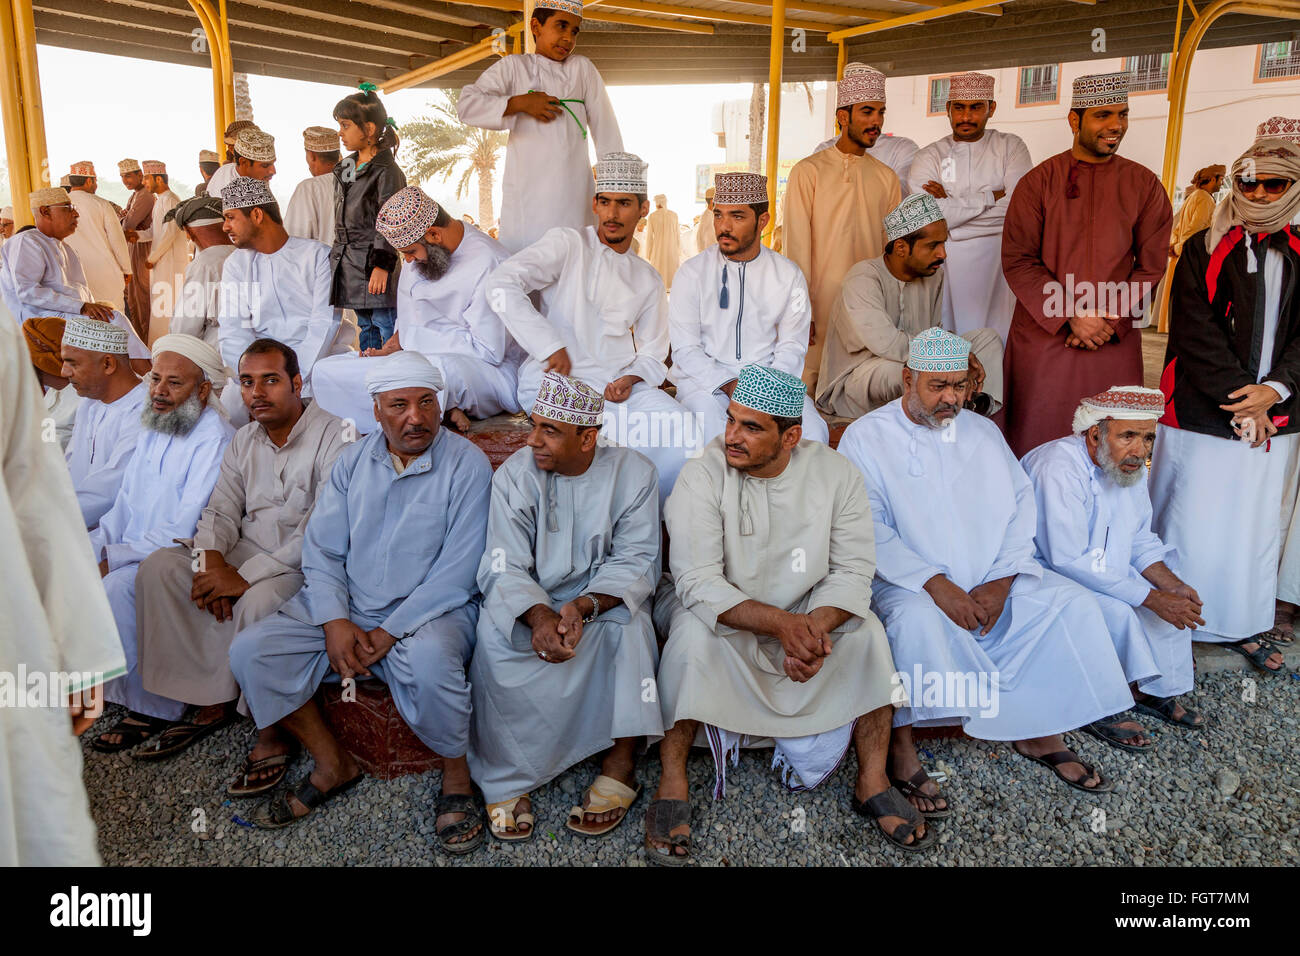 Omanische Männer In traditioneller Kleidung auf den Freitag Vieh Markt,  Nizwa, Ad Dakhiliyah Region, Oman Stockfotografie - Alamy